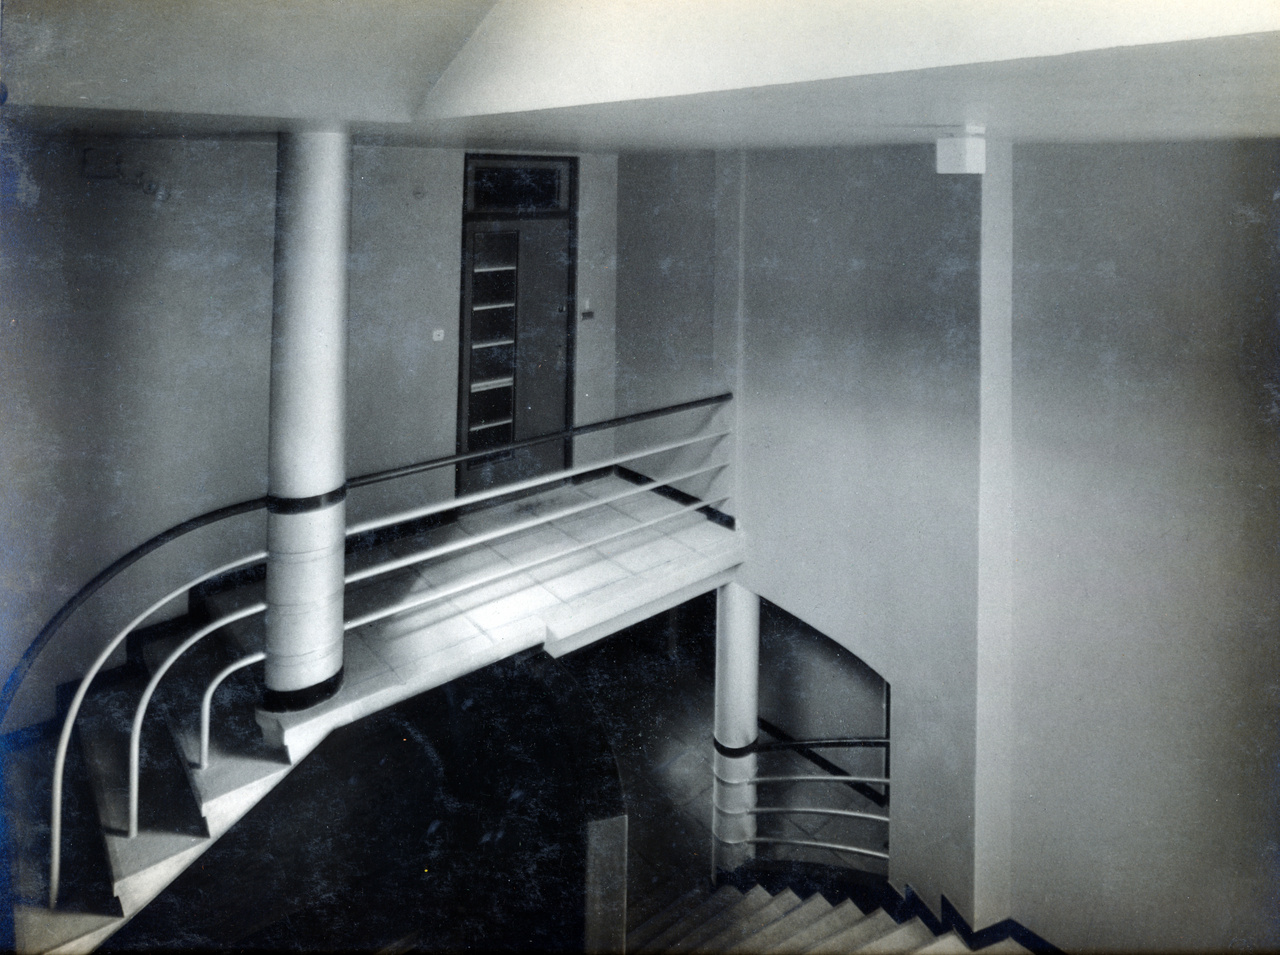 Az izgalmas formák megelőlegezik azokat a gyönyörű lépcsőházakat, amelyek majd Újlipótvárosban, vagy épp a Margit körúton épülnek.